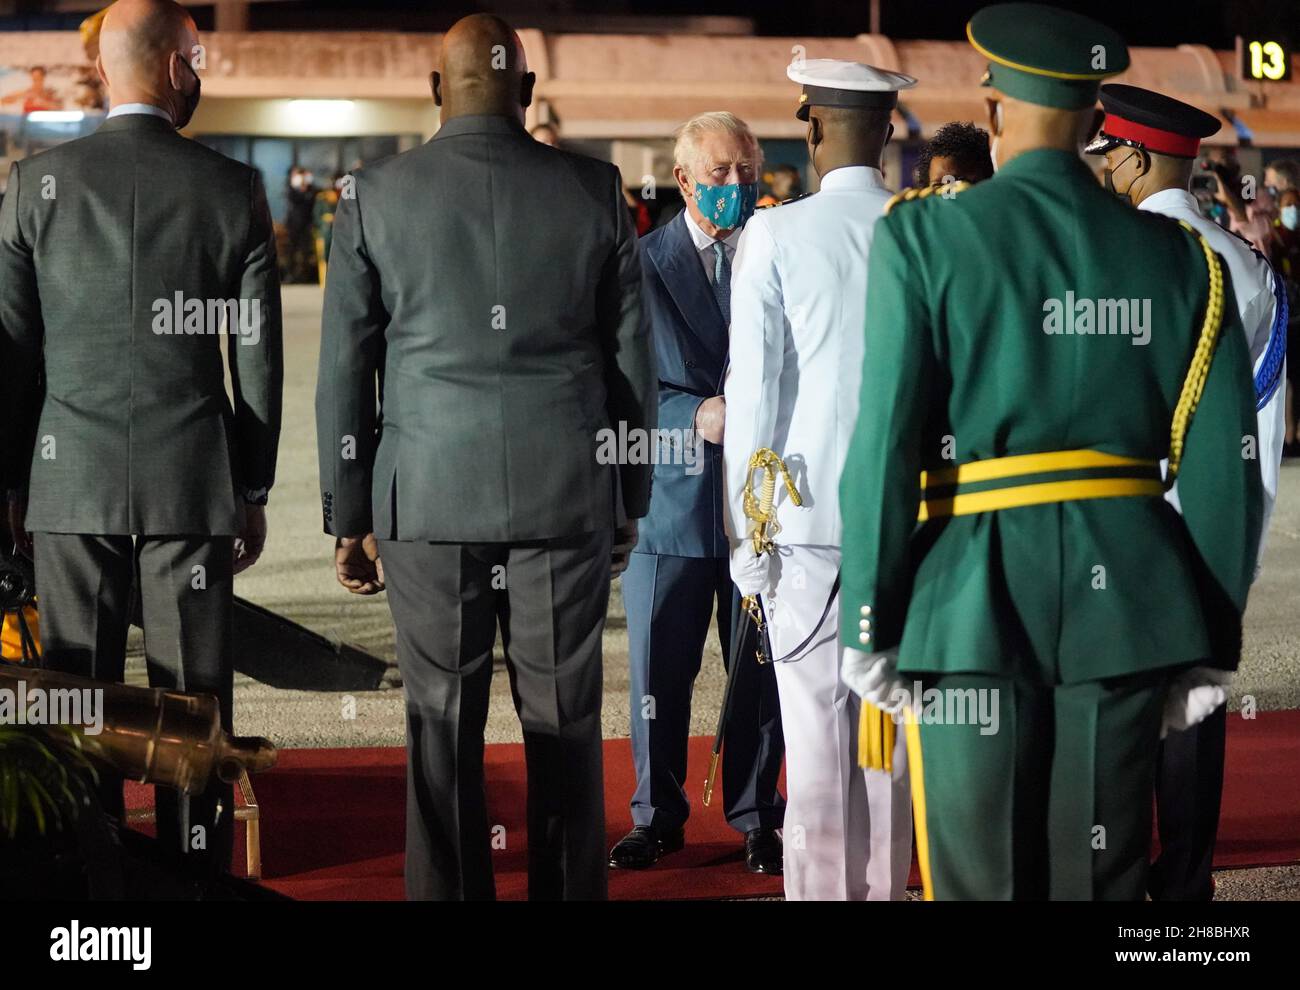 Der Prinz von Wales wird von versammelten Würdenträgern und Mitgliedern des Militärs begrüßt, als er am Grantley Adams International Airport, Bridgetown, Barbados, ankommt. Bilddatum: Sonntag, 28. November 2021. Stockfoto